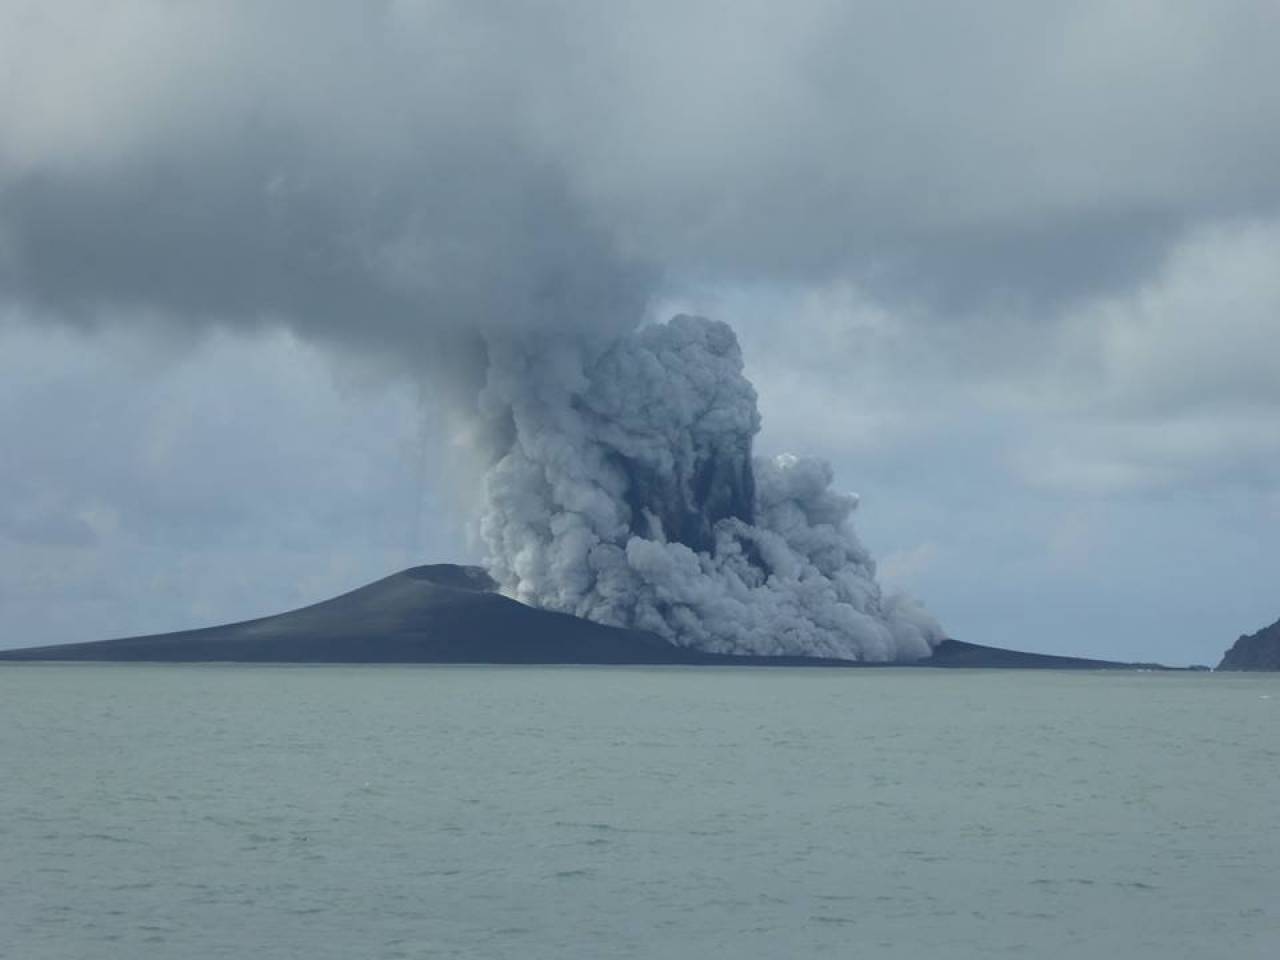 L'eruzione del vulcano Hunga Tonga fa tremare il Pacifico e causa degli tsunami